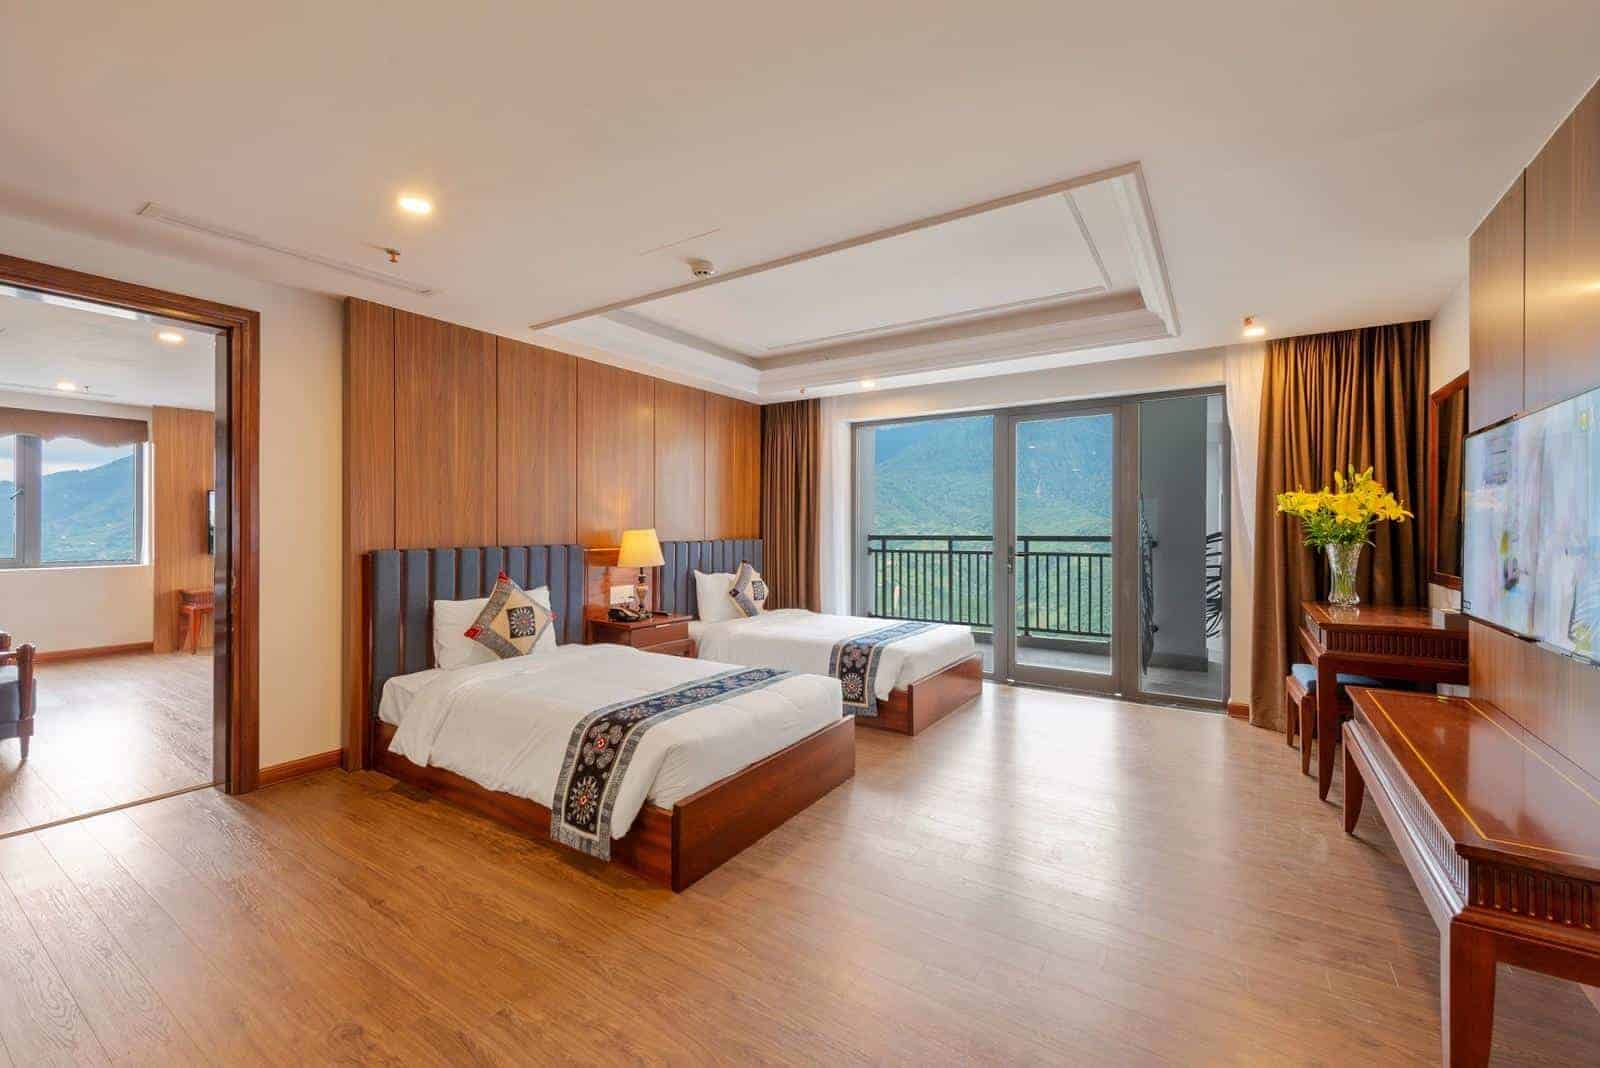 Không gian phòng của Bamboo Hotel Sapa ấm cúng với những ô kính tràn ngập ánh nắng